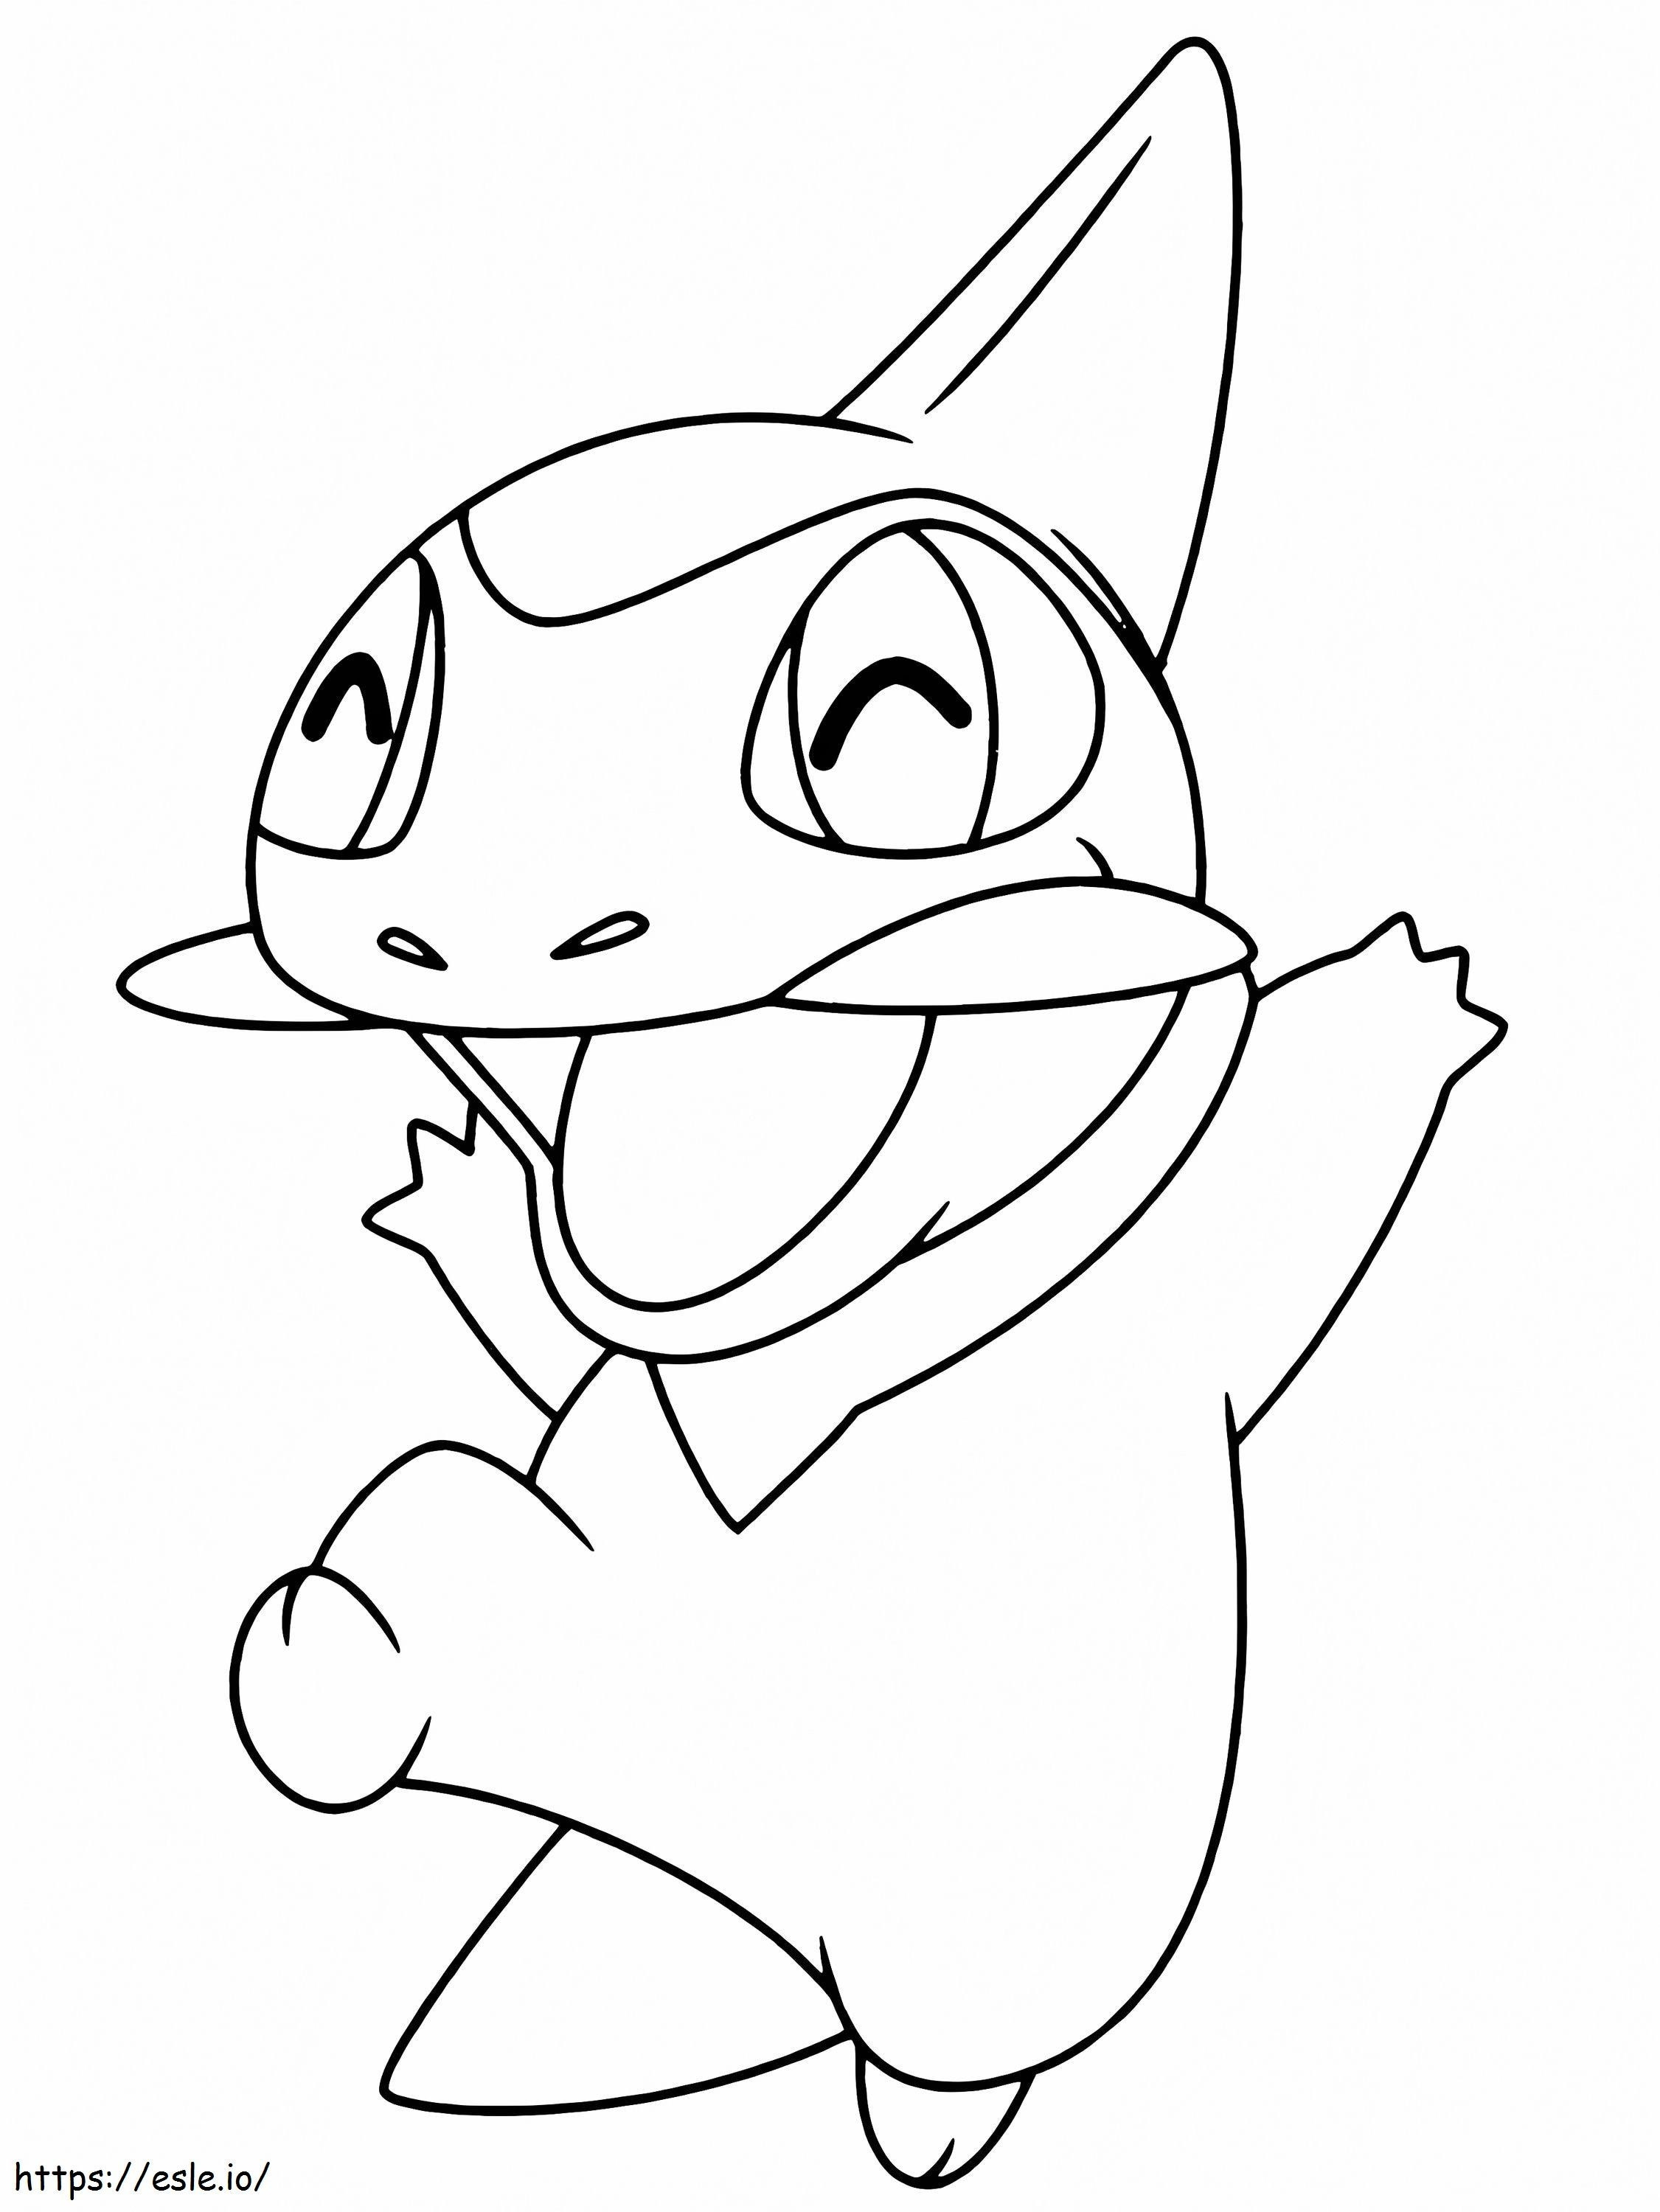 Coloriage Pokémon Axew à imprimer dessin